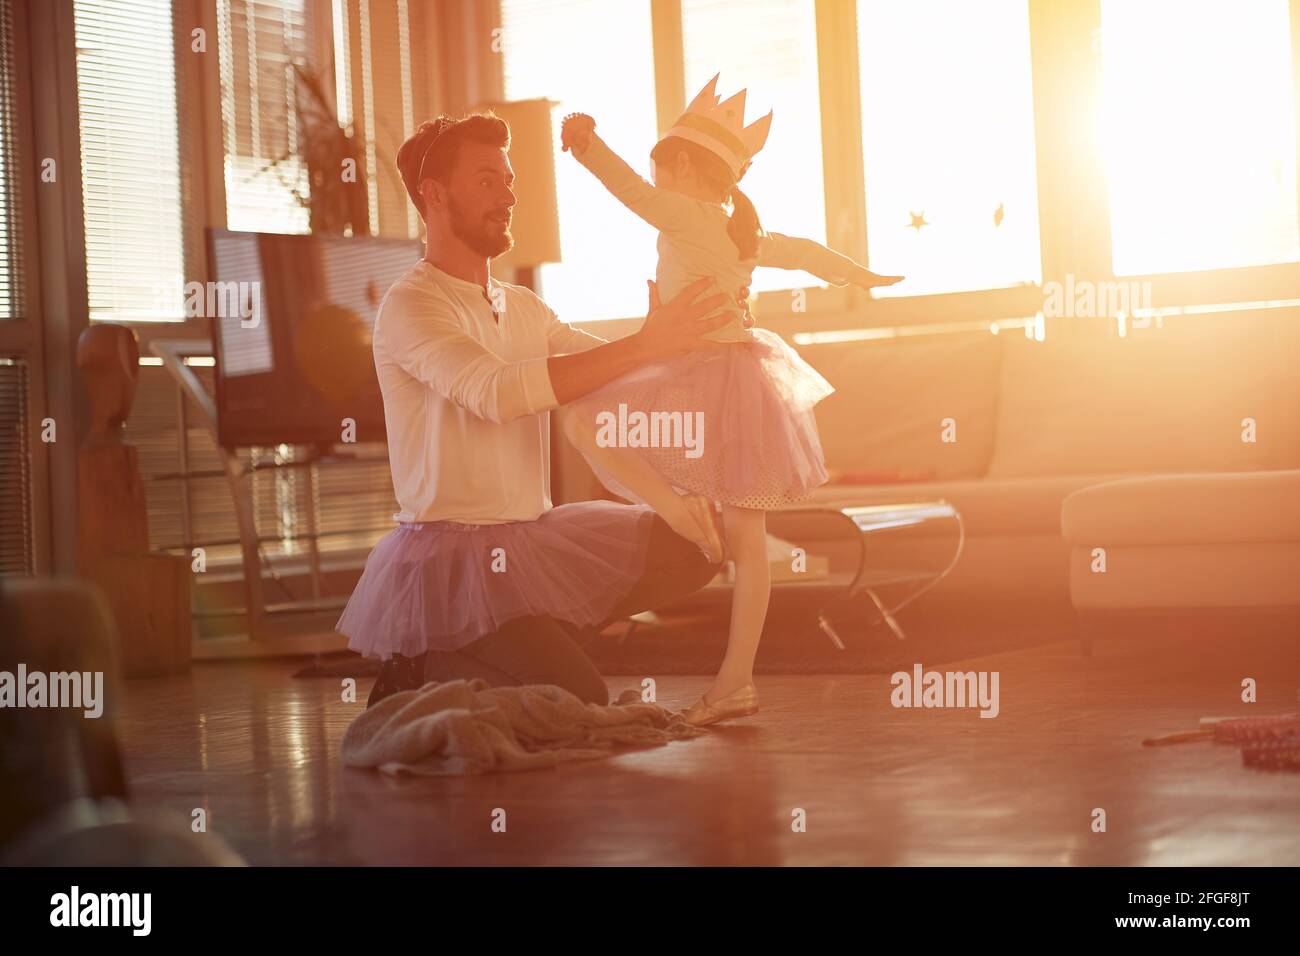 Ein junger Vater liebt es, mit seiner kleinen Tochter in einer schönen Atmosphäre zu Hause an ihren Ballettzügen zu arbeiten. Familie, zusammen, zu Hause Stockfoto